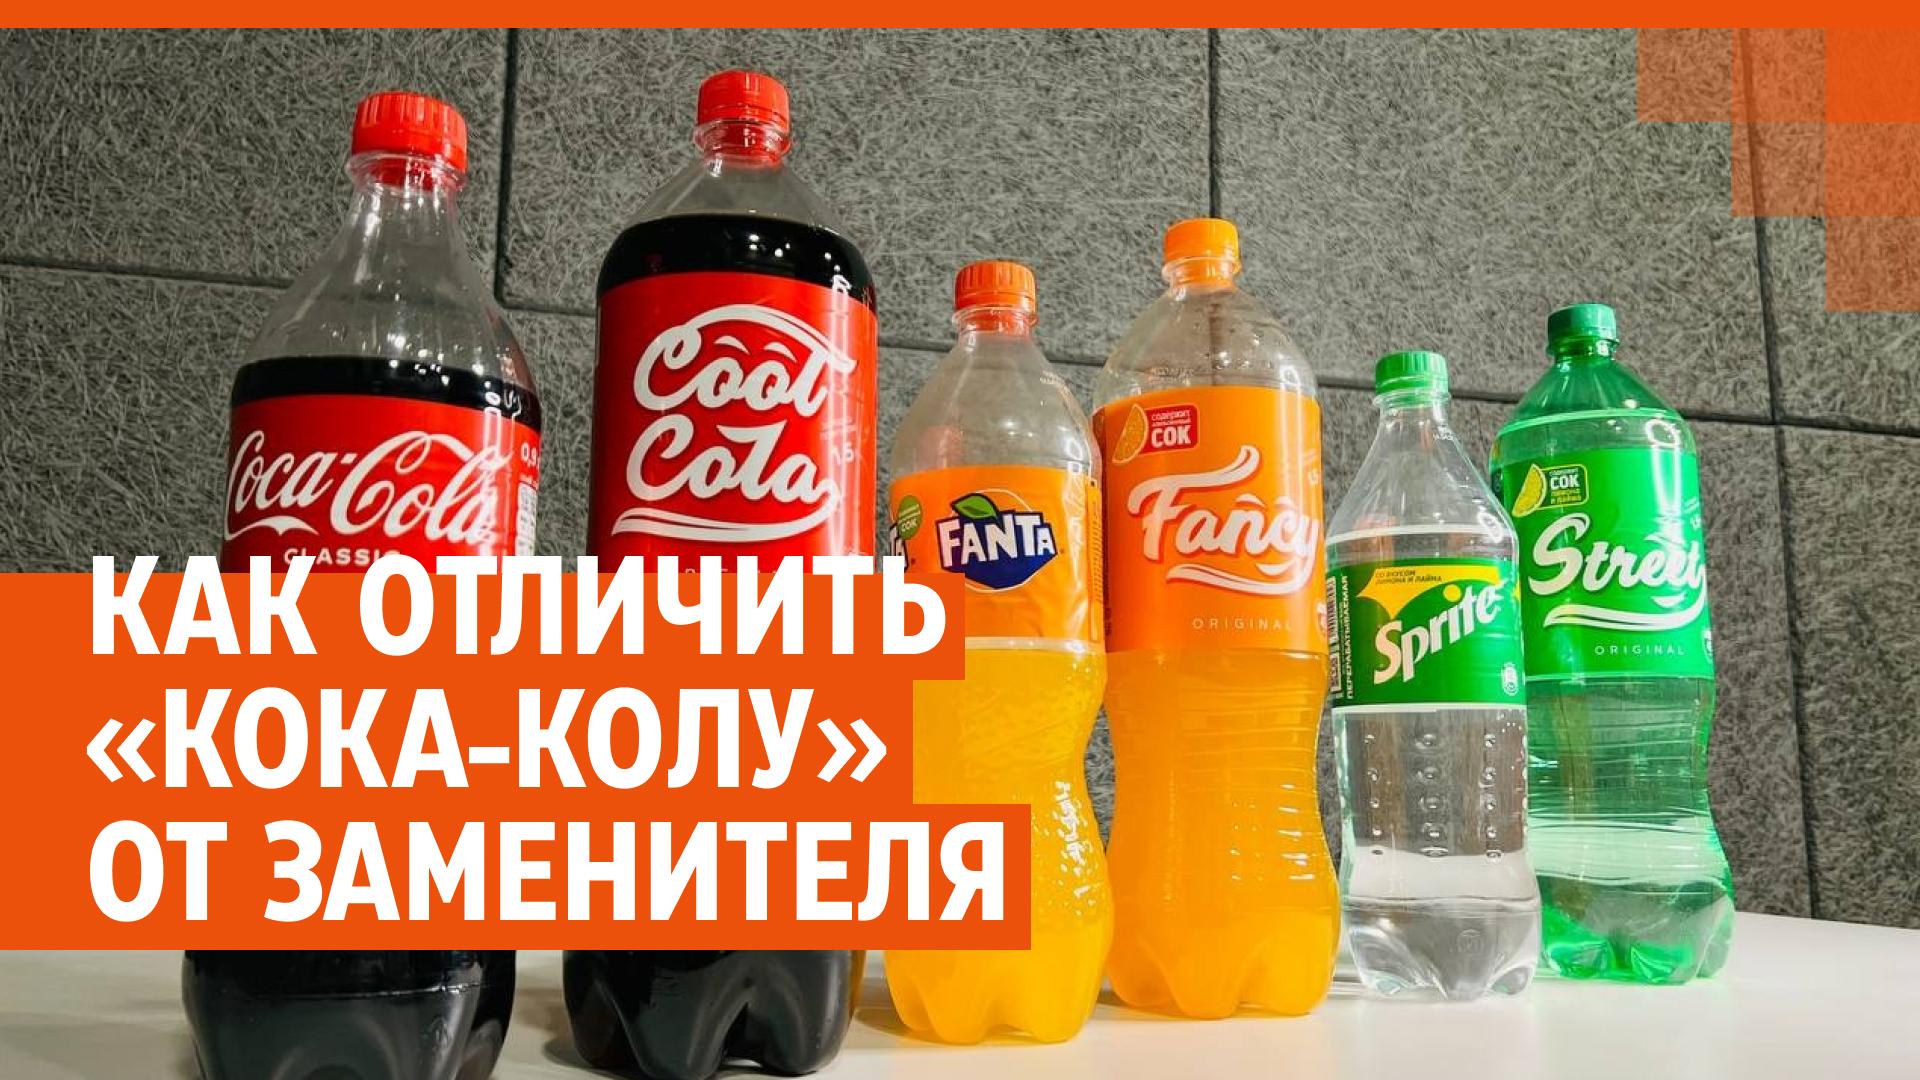 Coca Cola пить Изображения – скачать бесплатно на Freepik